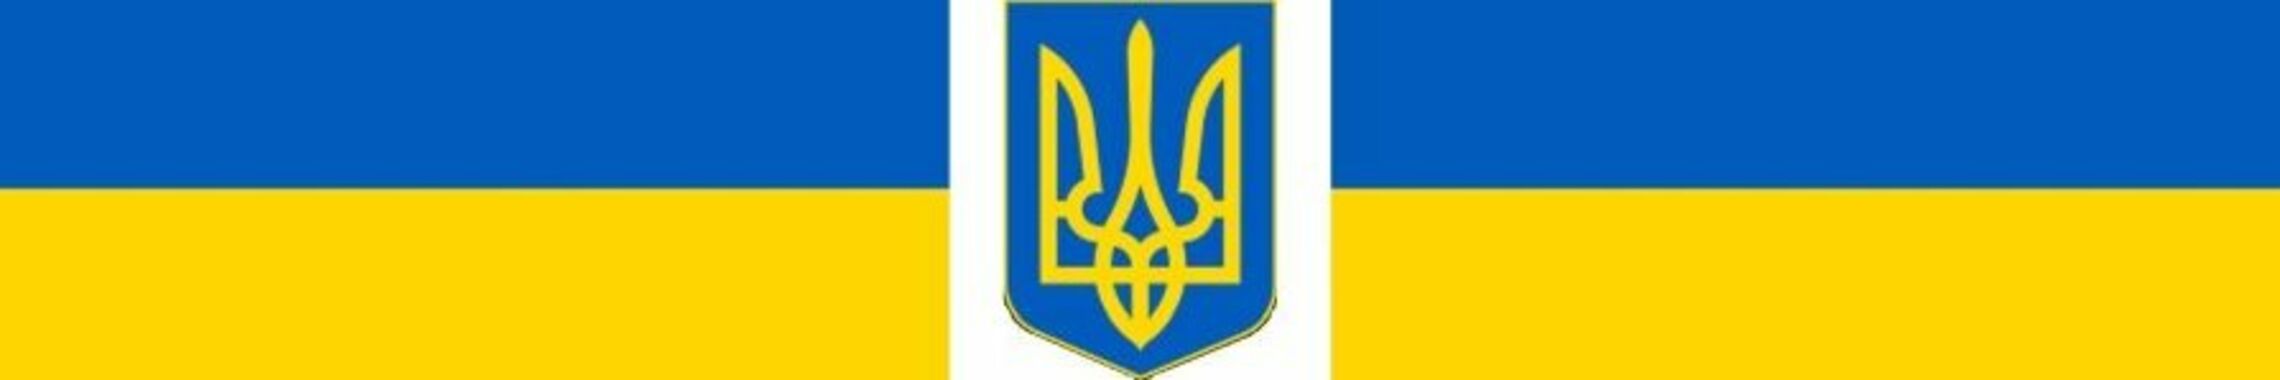 Ukraine: Flagge und Wappen